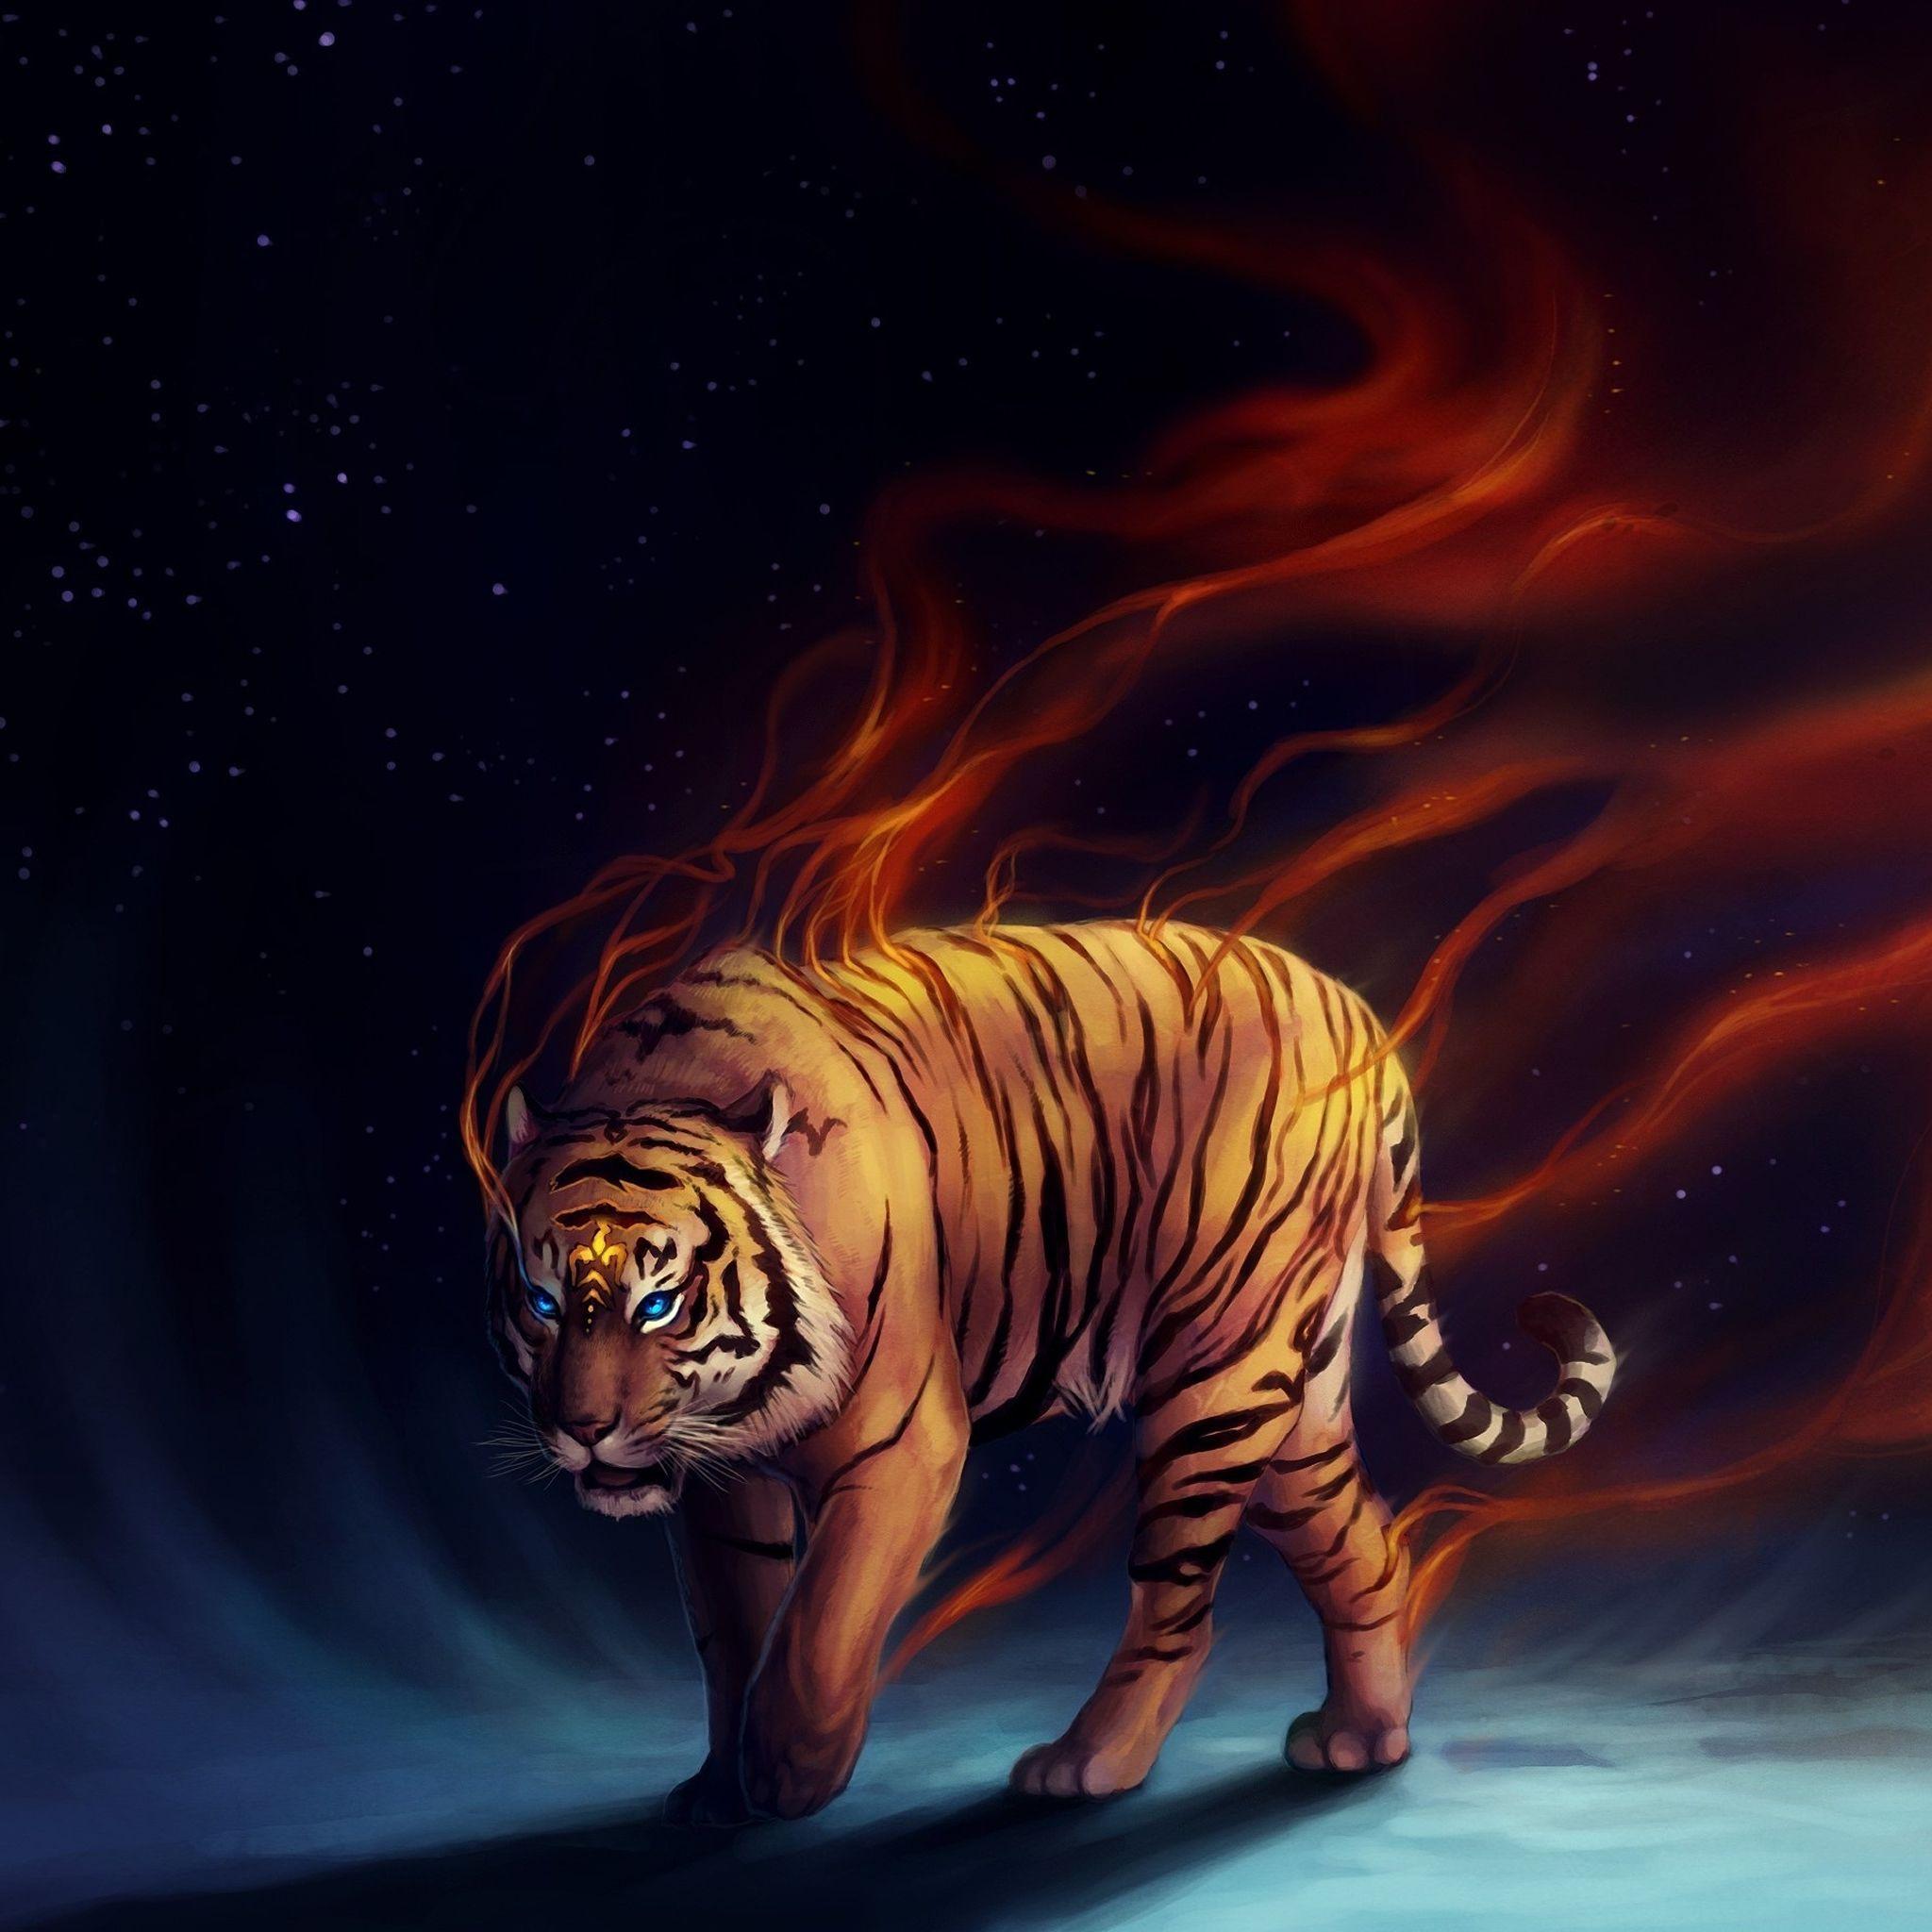 Tiger wallpaper, Tiger art .com